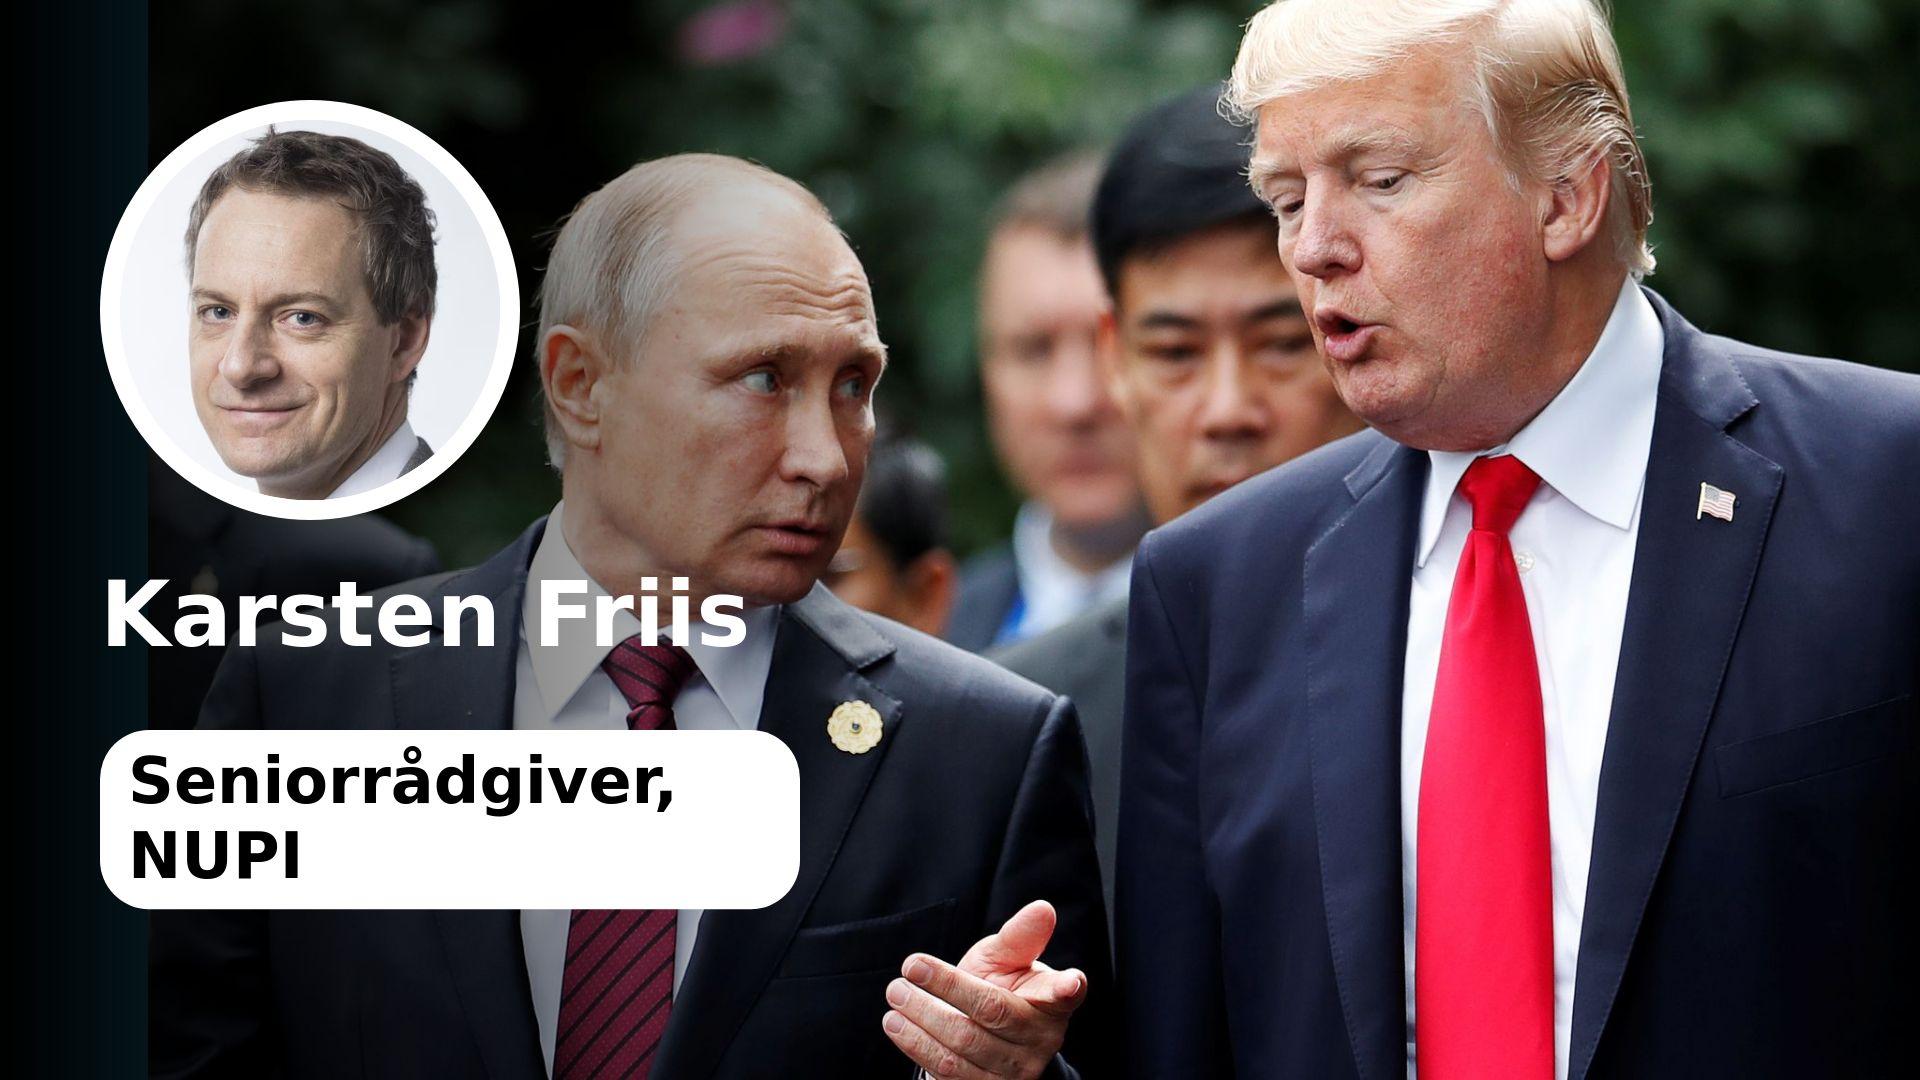 Ingen vet hva som kommer etter Putin og Trump. Kanskje det blir verre, skriver kronikkforfatteren. Bildet viser Putin og Trump da de nylig møttes på APEC-toppmøtet i Da Nang, Vietnam.